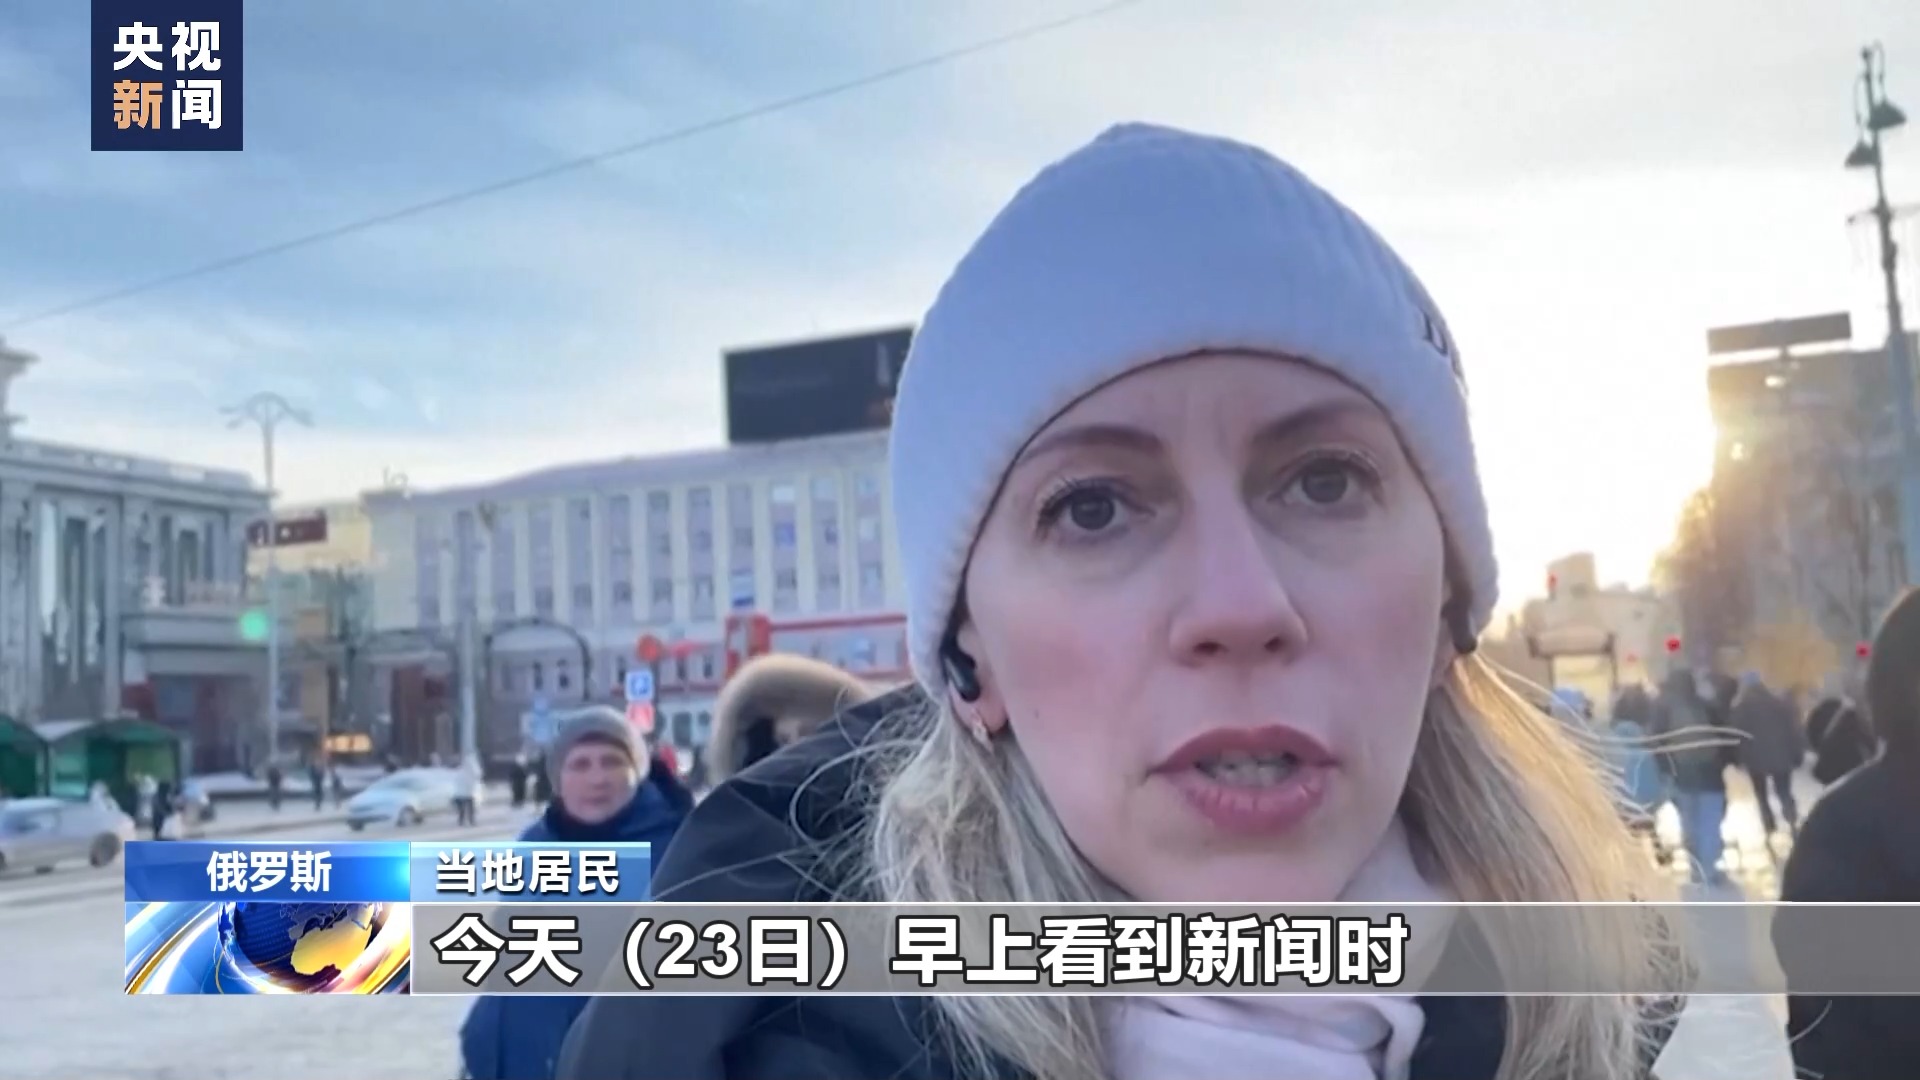 莫斯科居民自发悼念亡者 对恐袭事件感到痛心